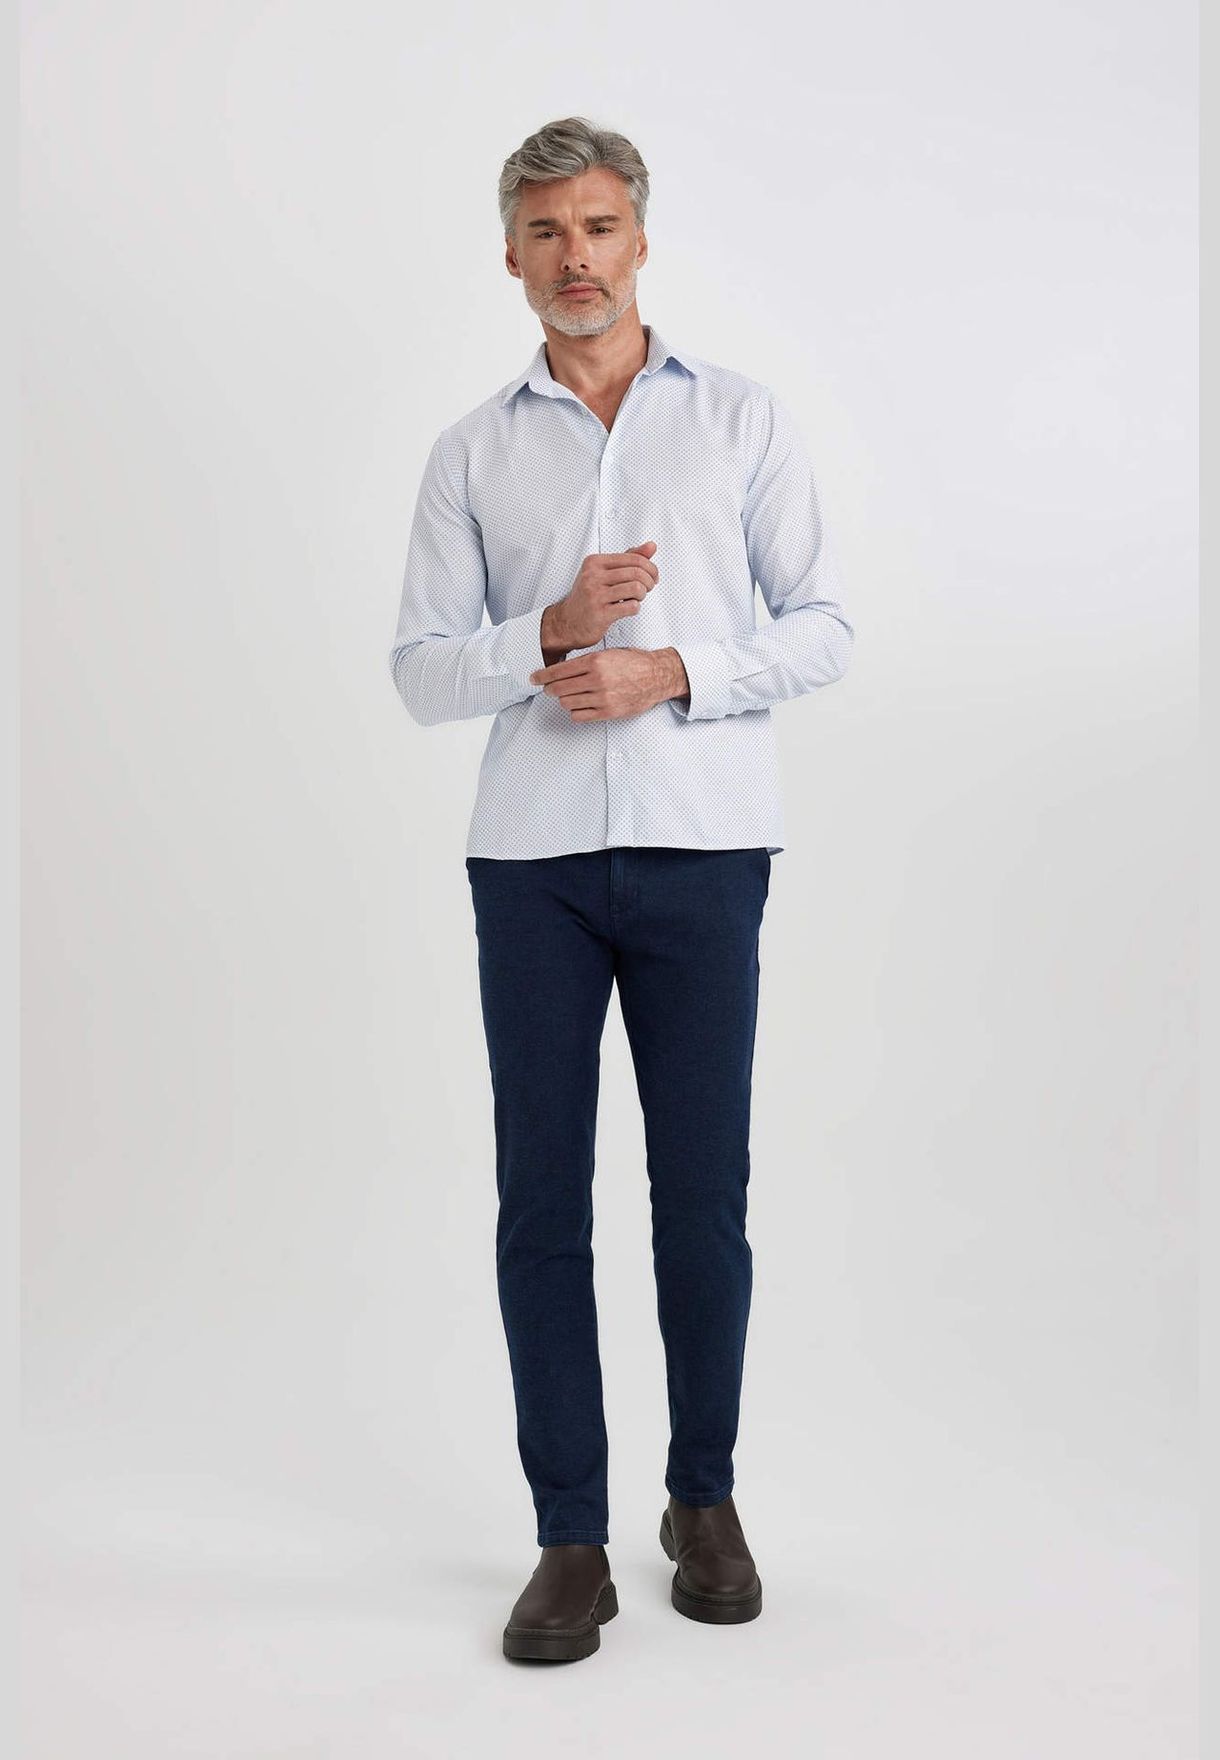 Man Modern Fit italian Neck Woven Long Sleeve Shirt